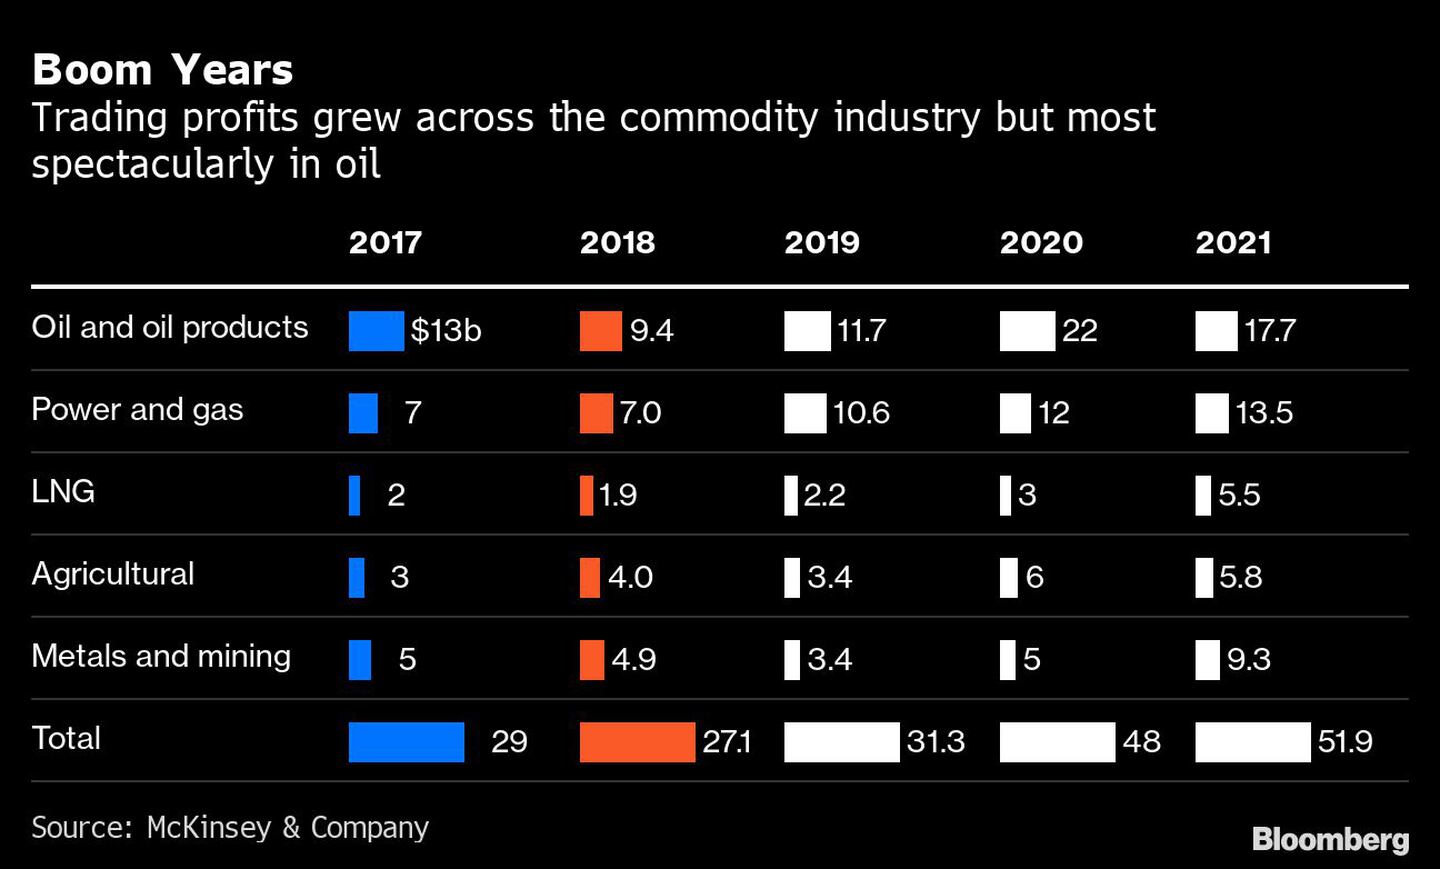  Los beneficios comerciales crecieron en todo el sector de las materias primas, pero de forma más espectacular en el petróleodfd